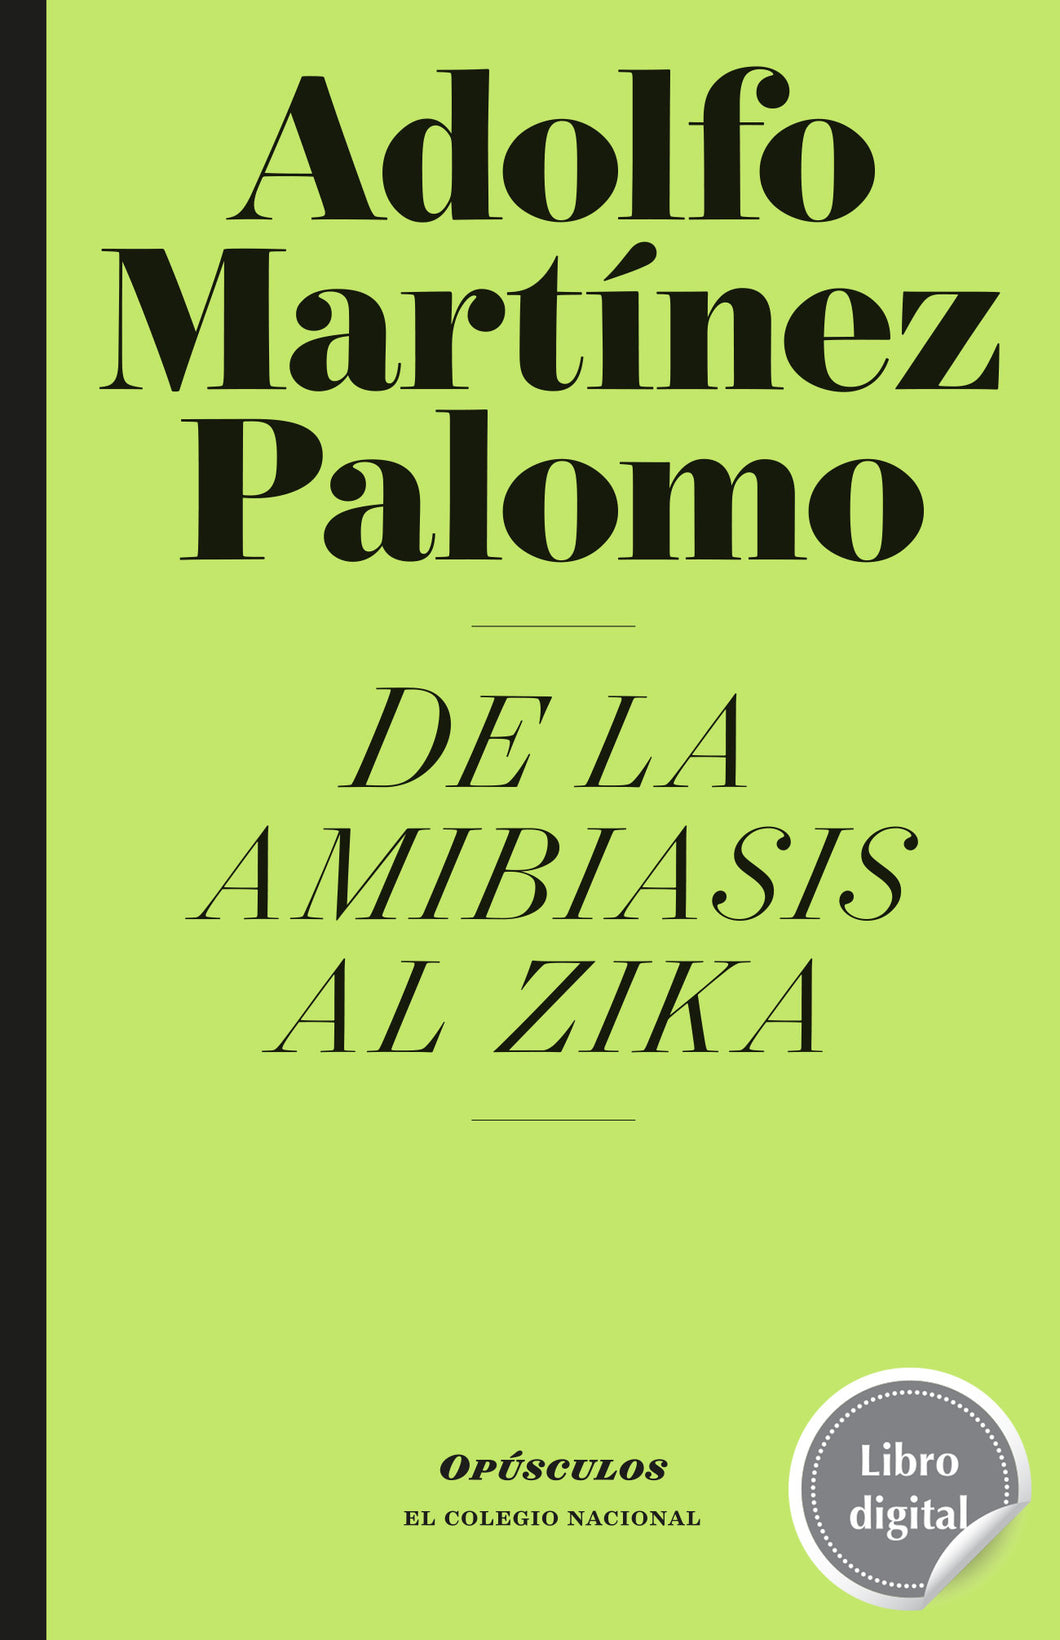 De la amibiasis al zika de Adolfo Martínez Palomo, libro digital de El Colegio Nacional, Libros Colnal